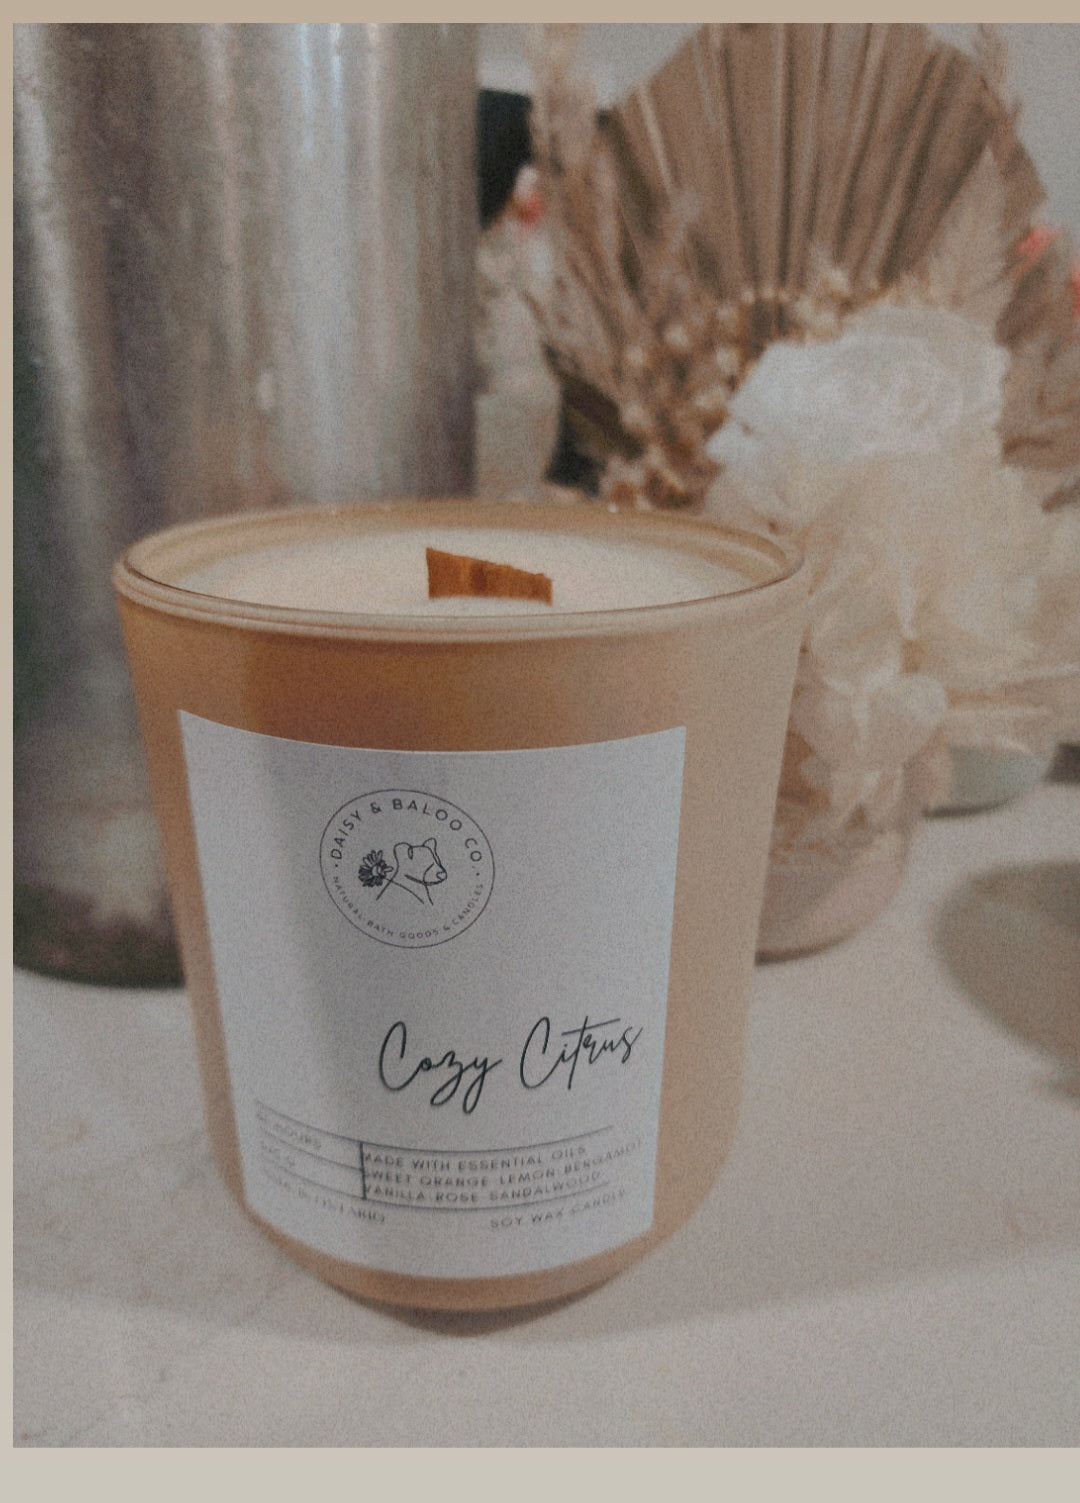 Cozy citrus candle - 14oz